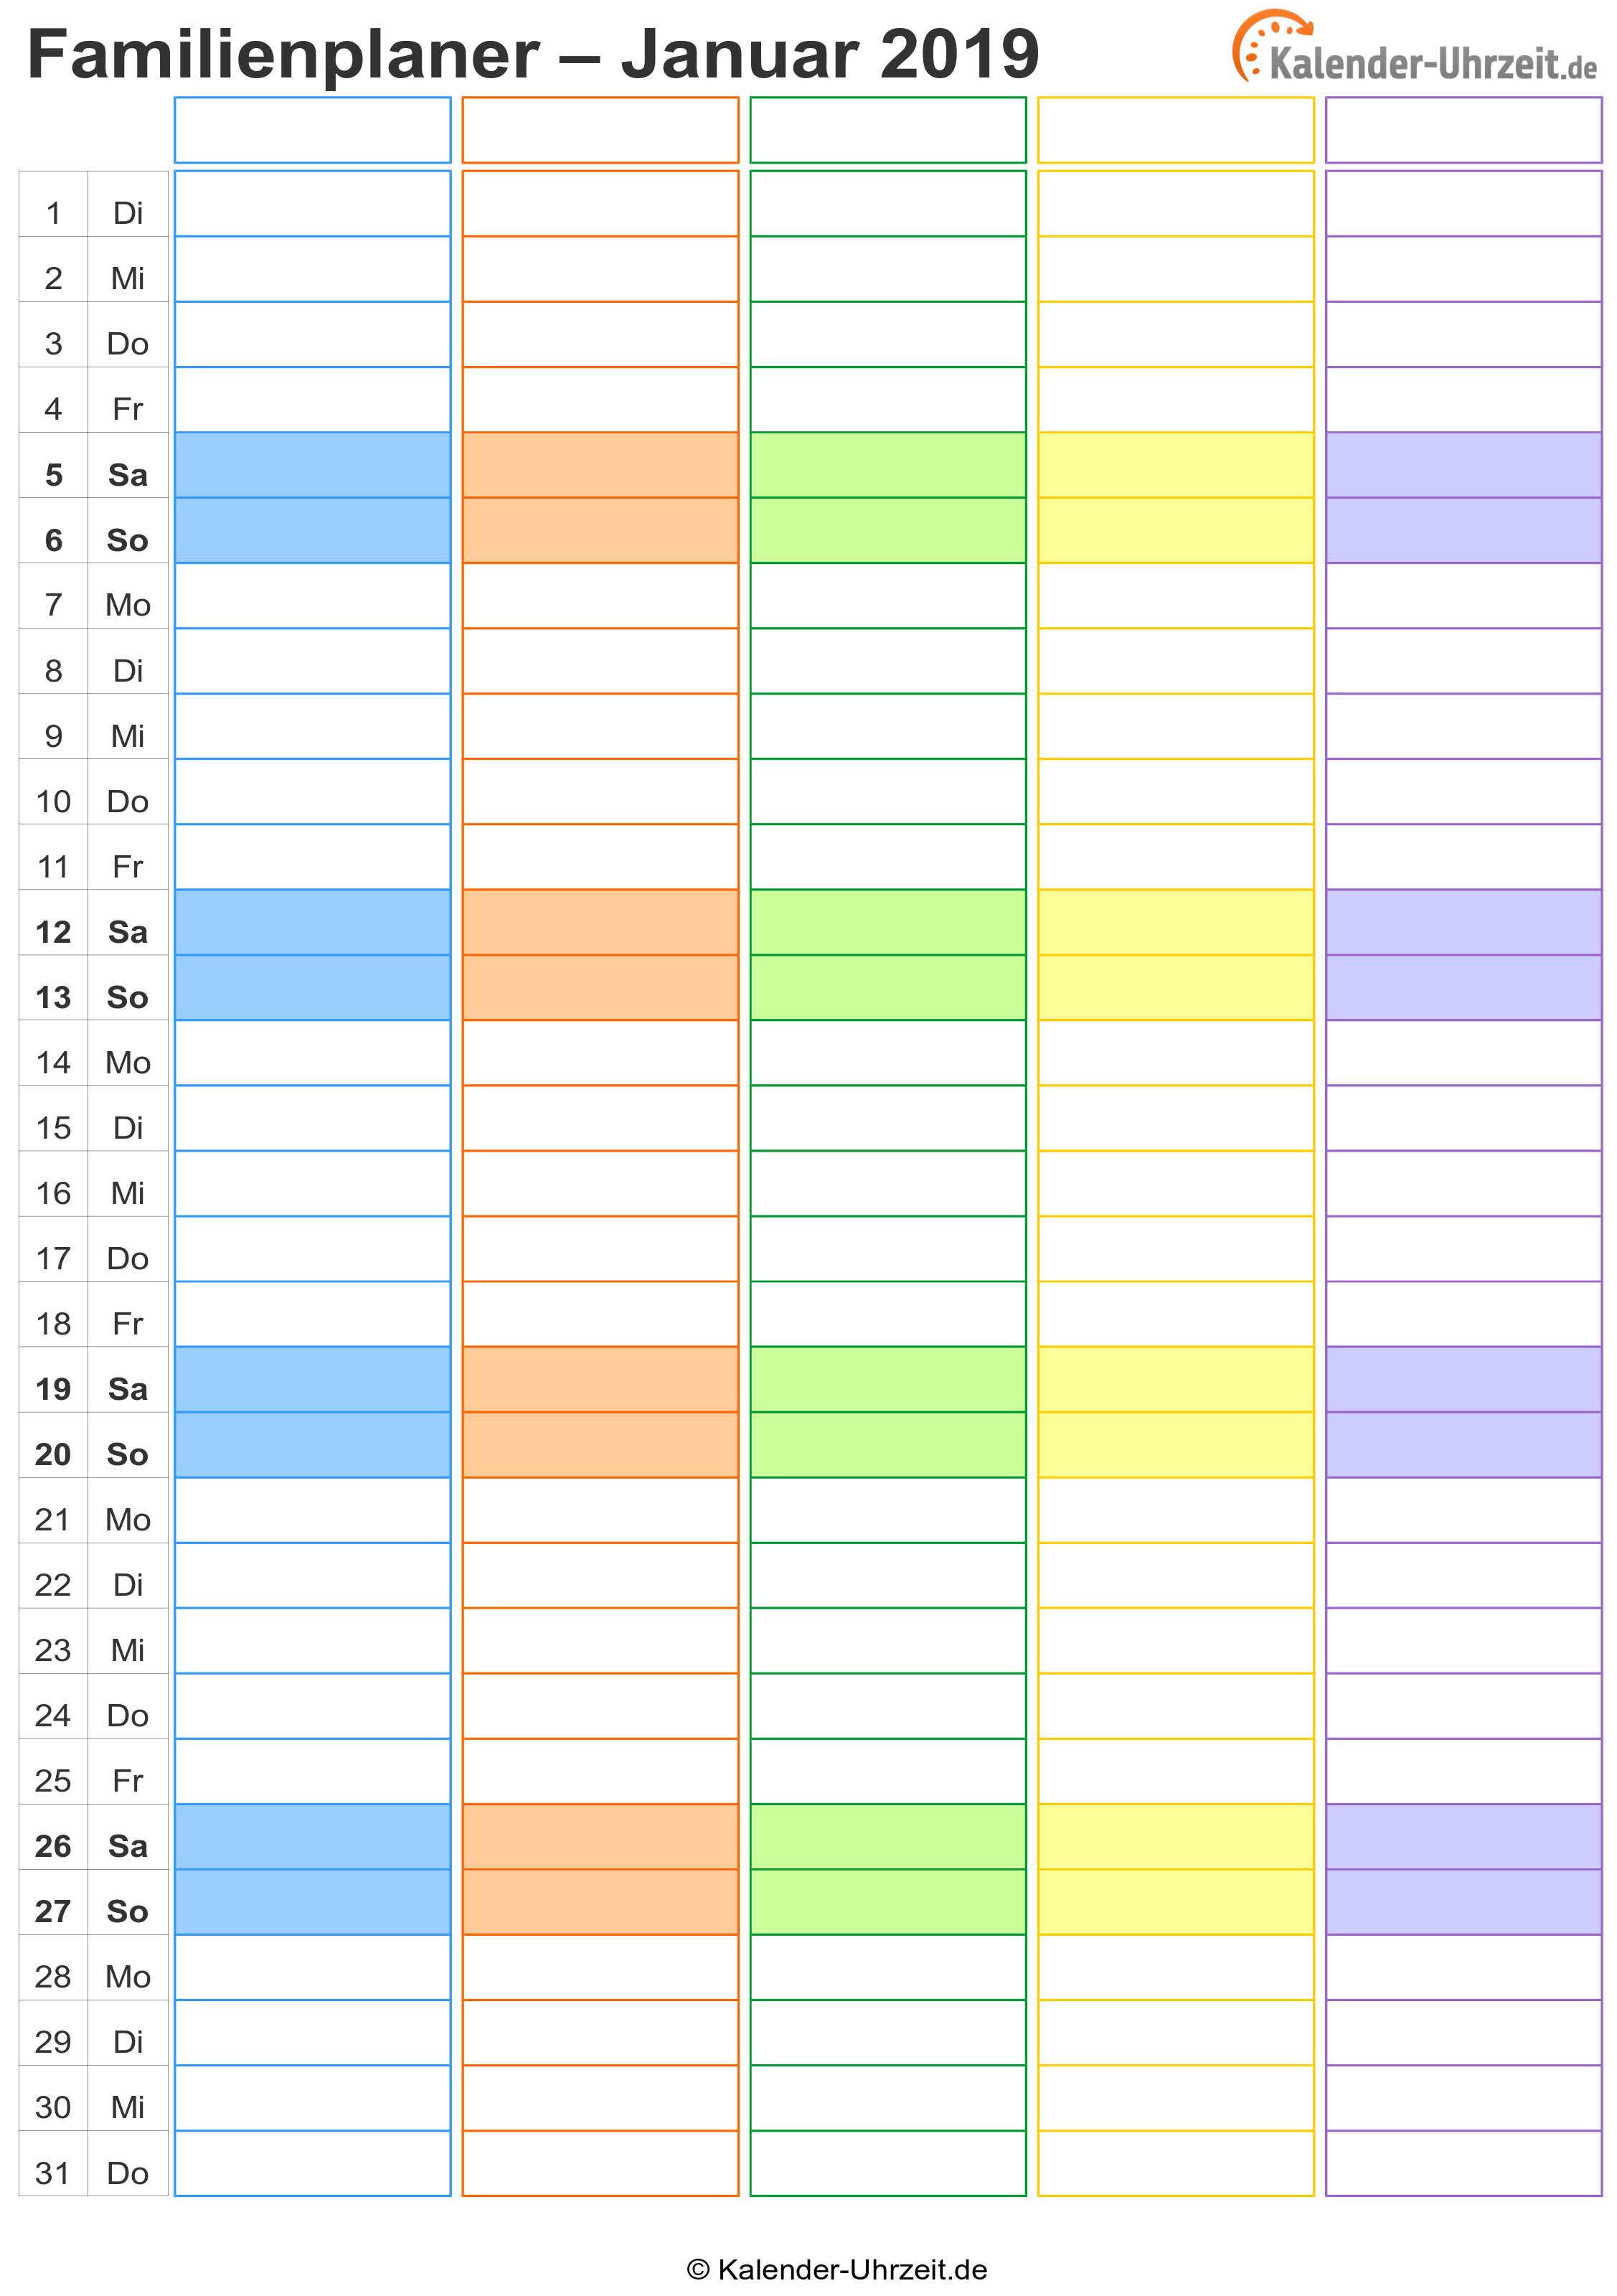 Familienplaner 2019 Bunt Kalender 2018 Kalender Vorlagen Kalender